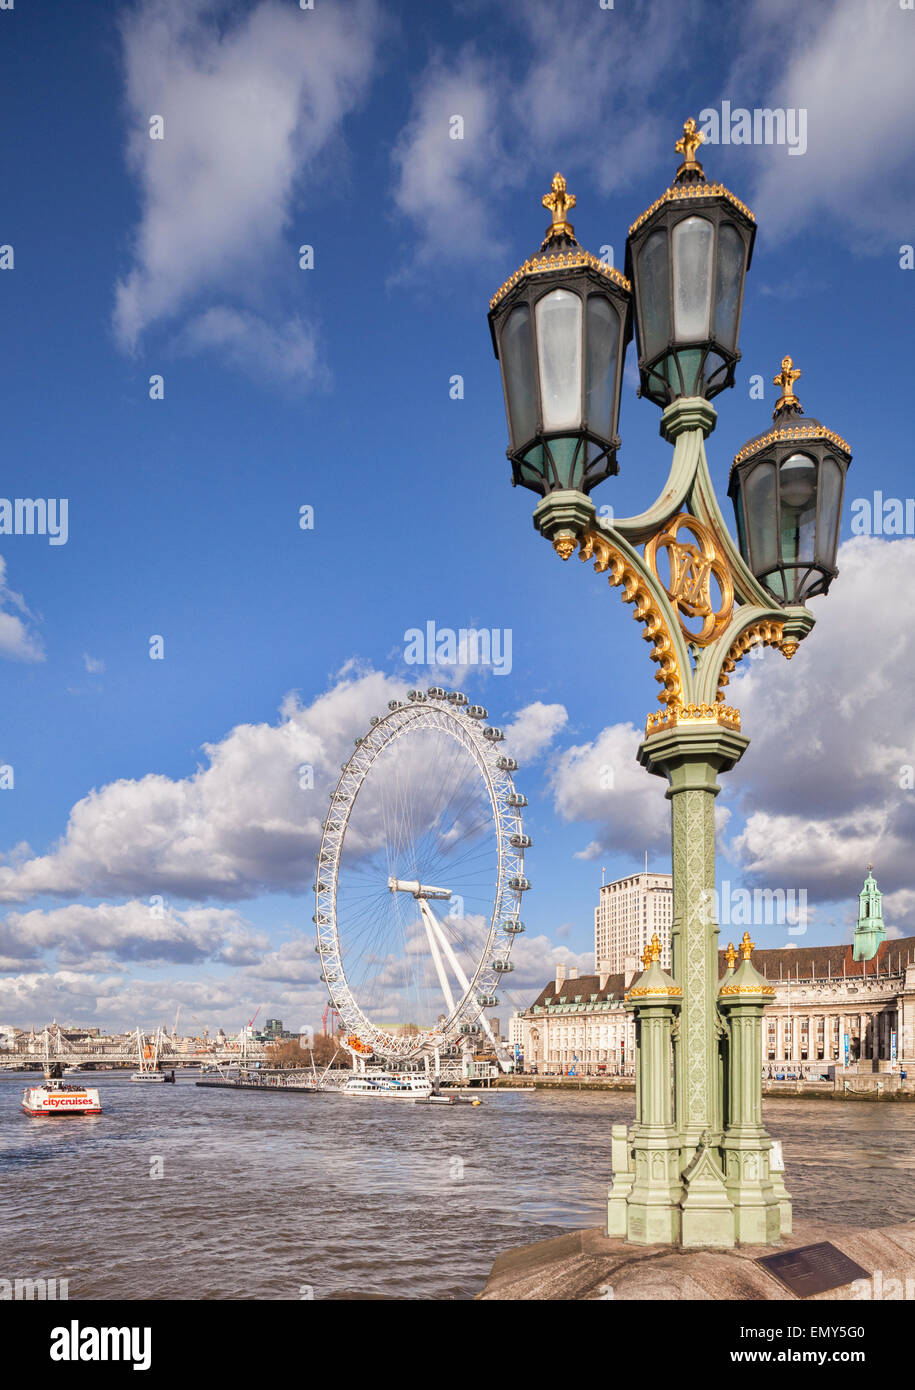 Une lampe standard sur le pont de Westminster avec le London Eye et le County Hall en arrière-plan. Banque D'Images